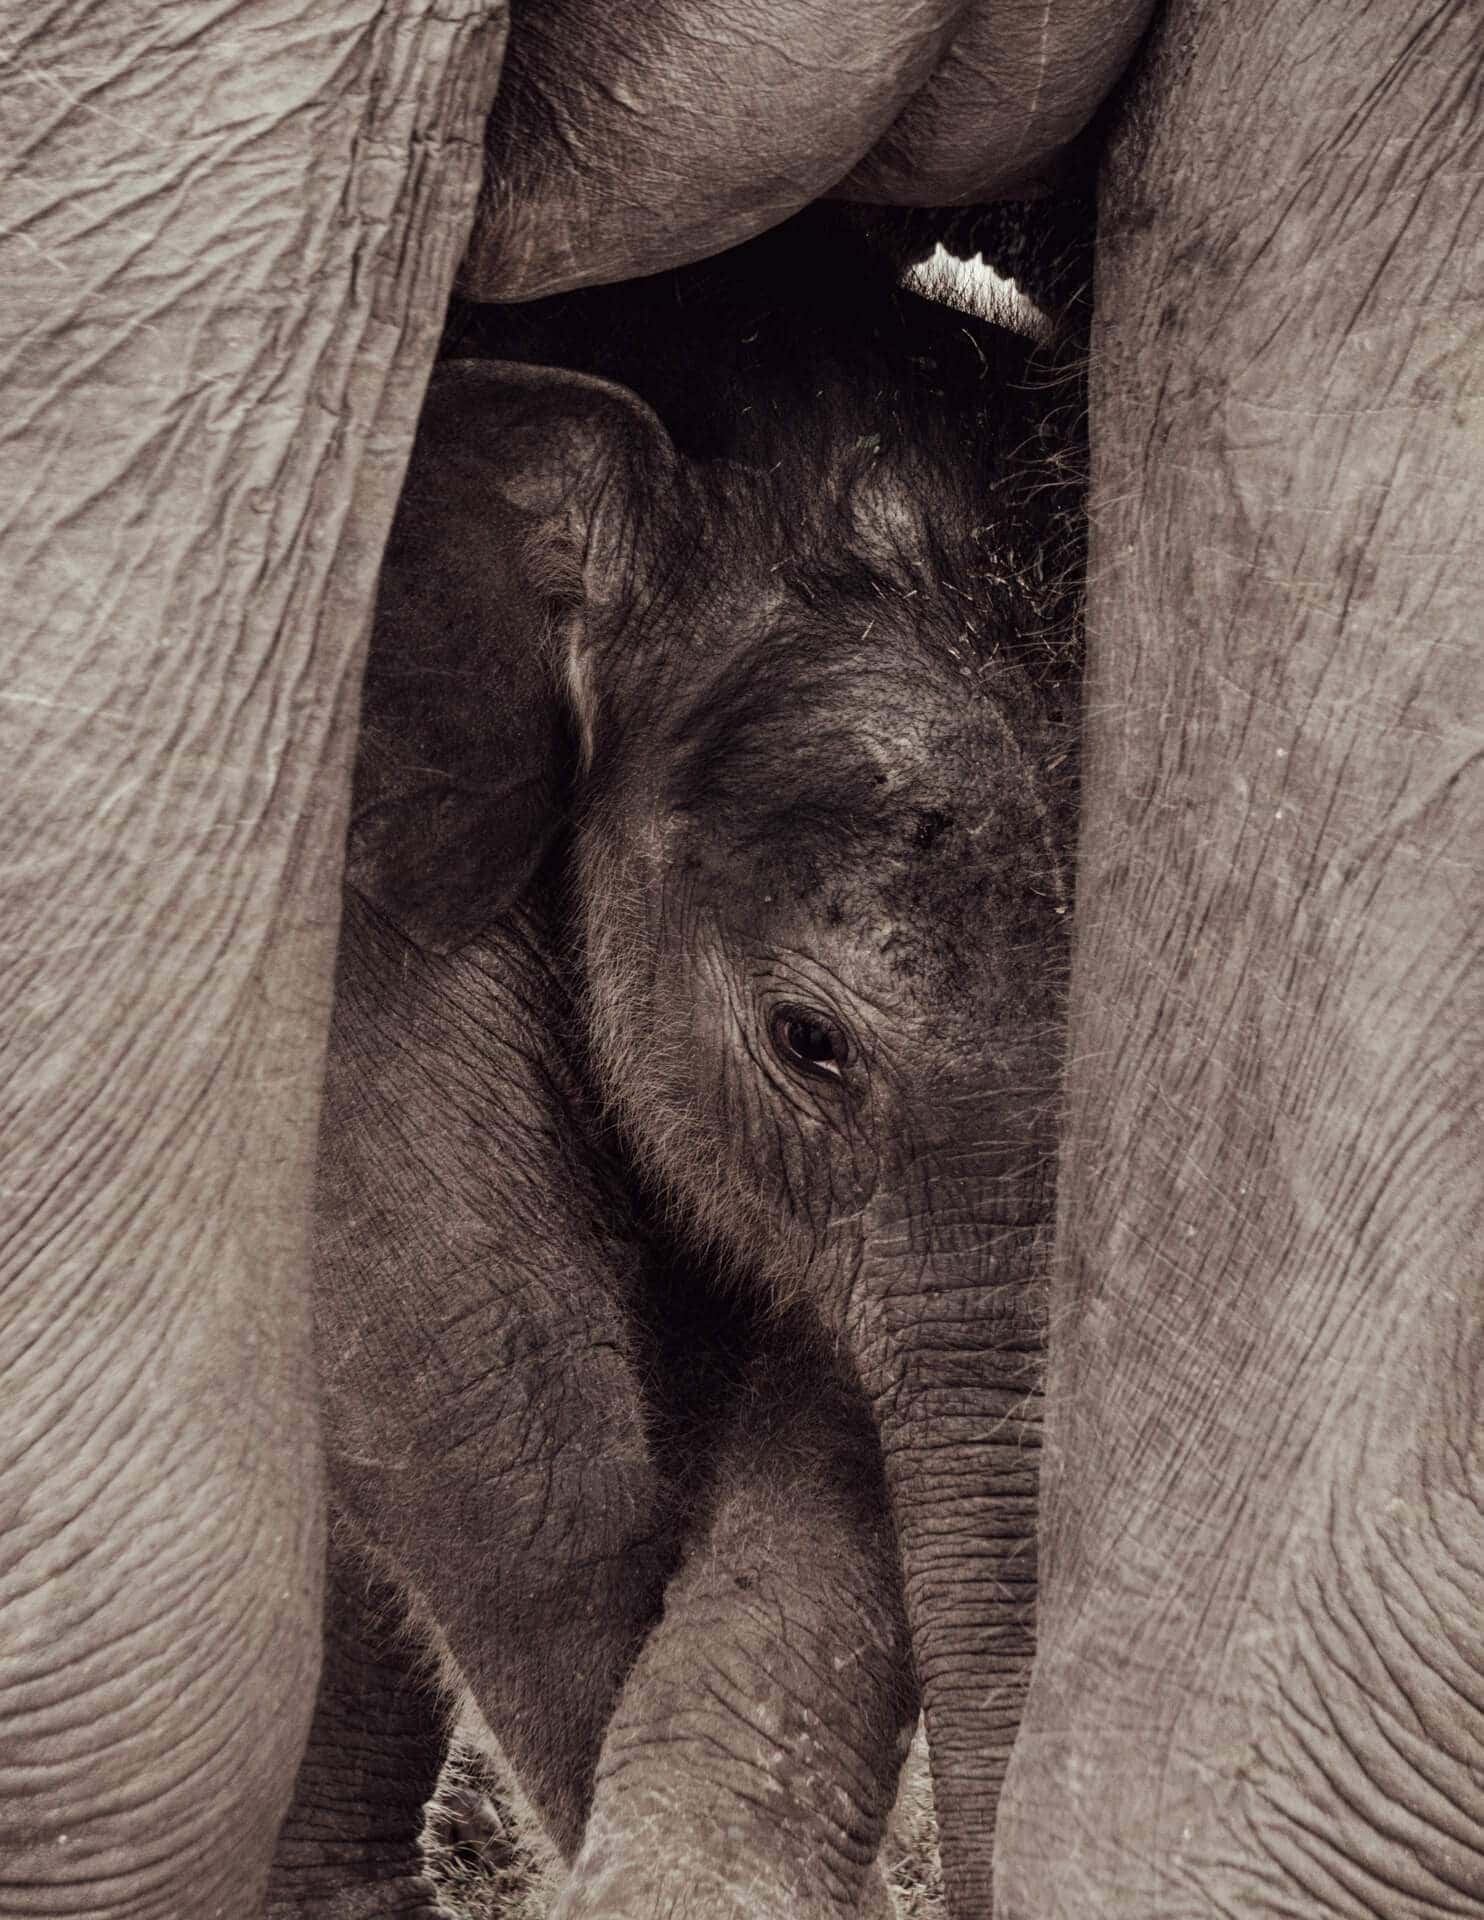 kaudulla national park sri lanka baby elephant